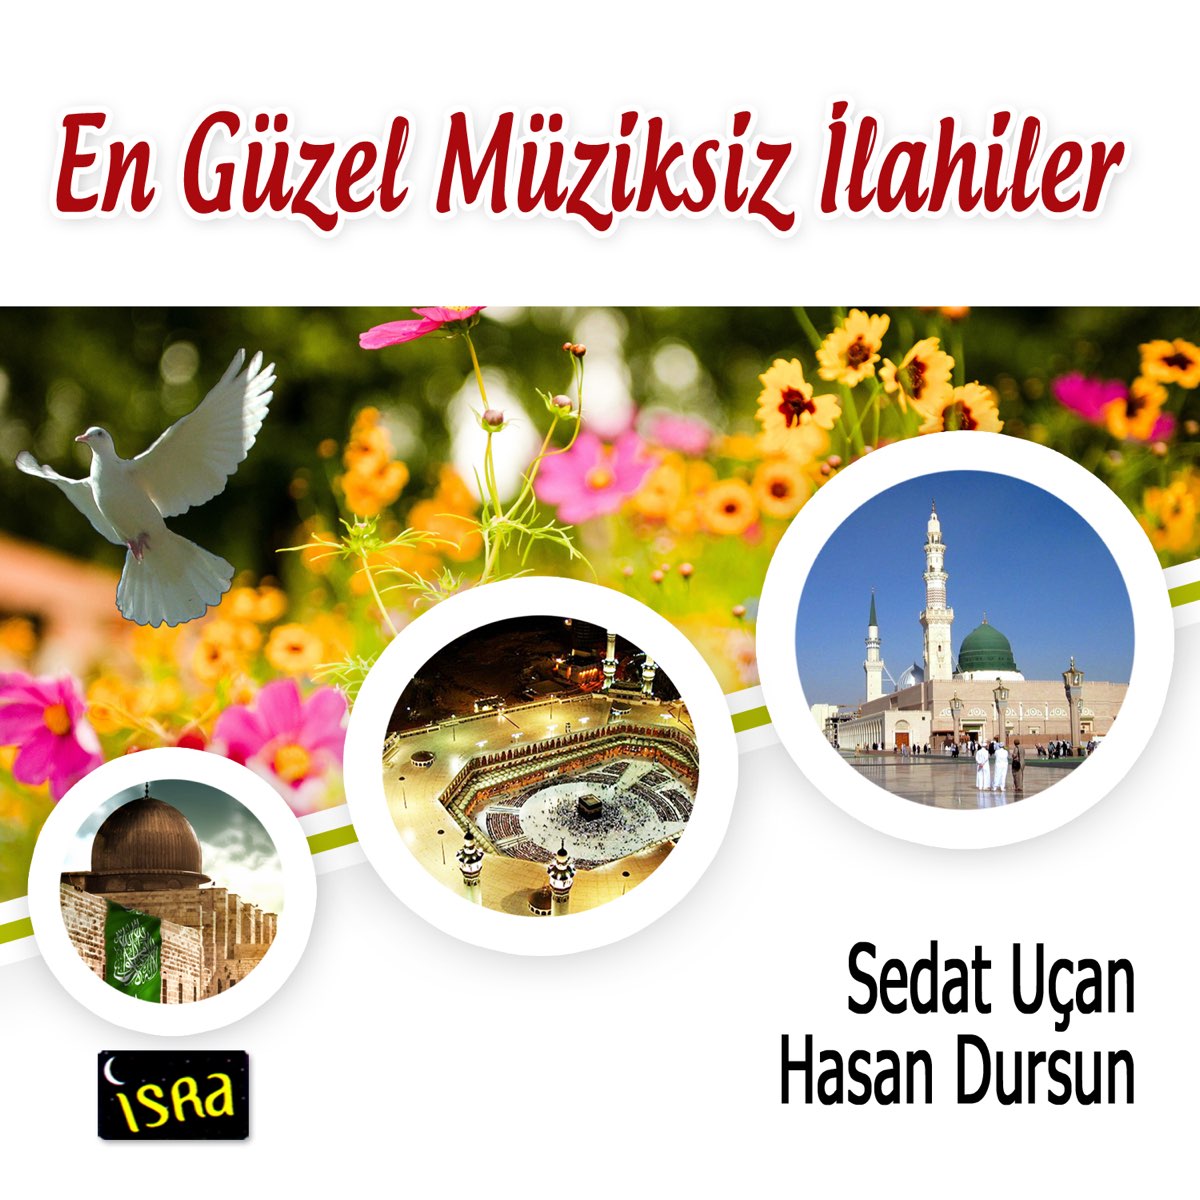 En Güzel Müziksiz İlahiler - Album by Sedat Uçan & Hasan Dursun - Apple  Music